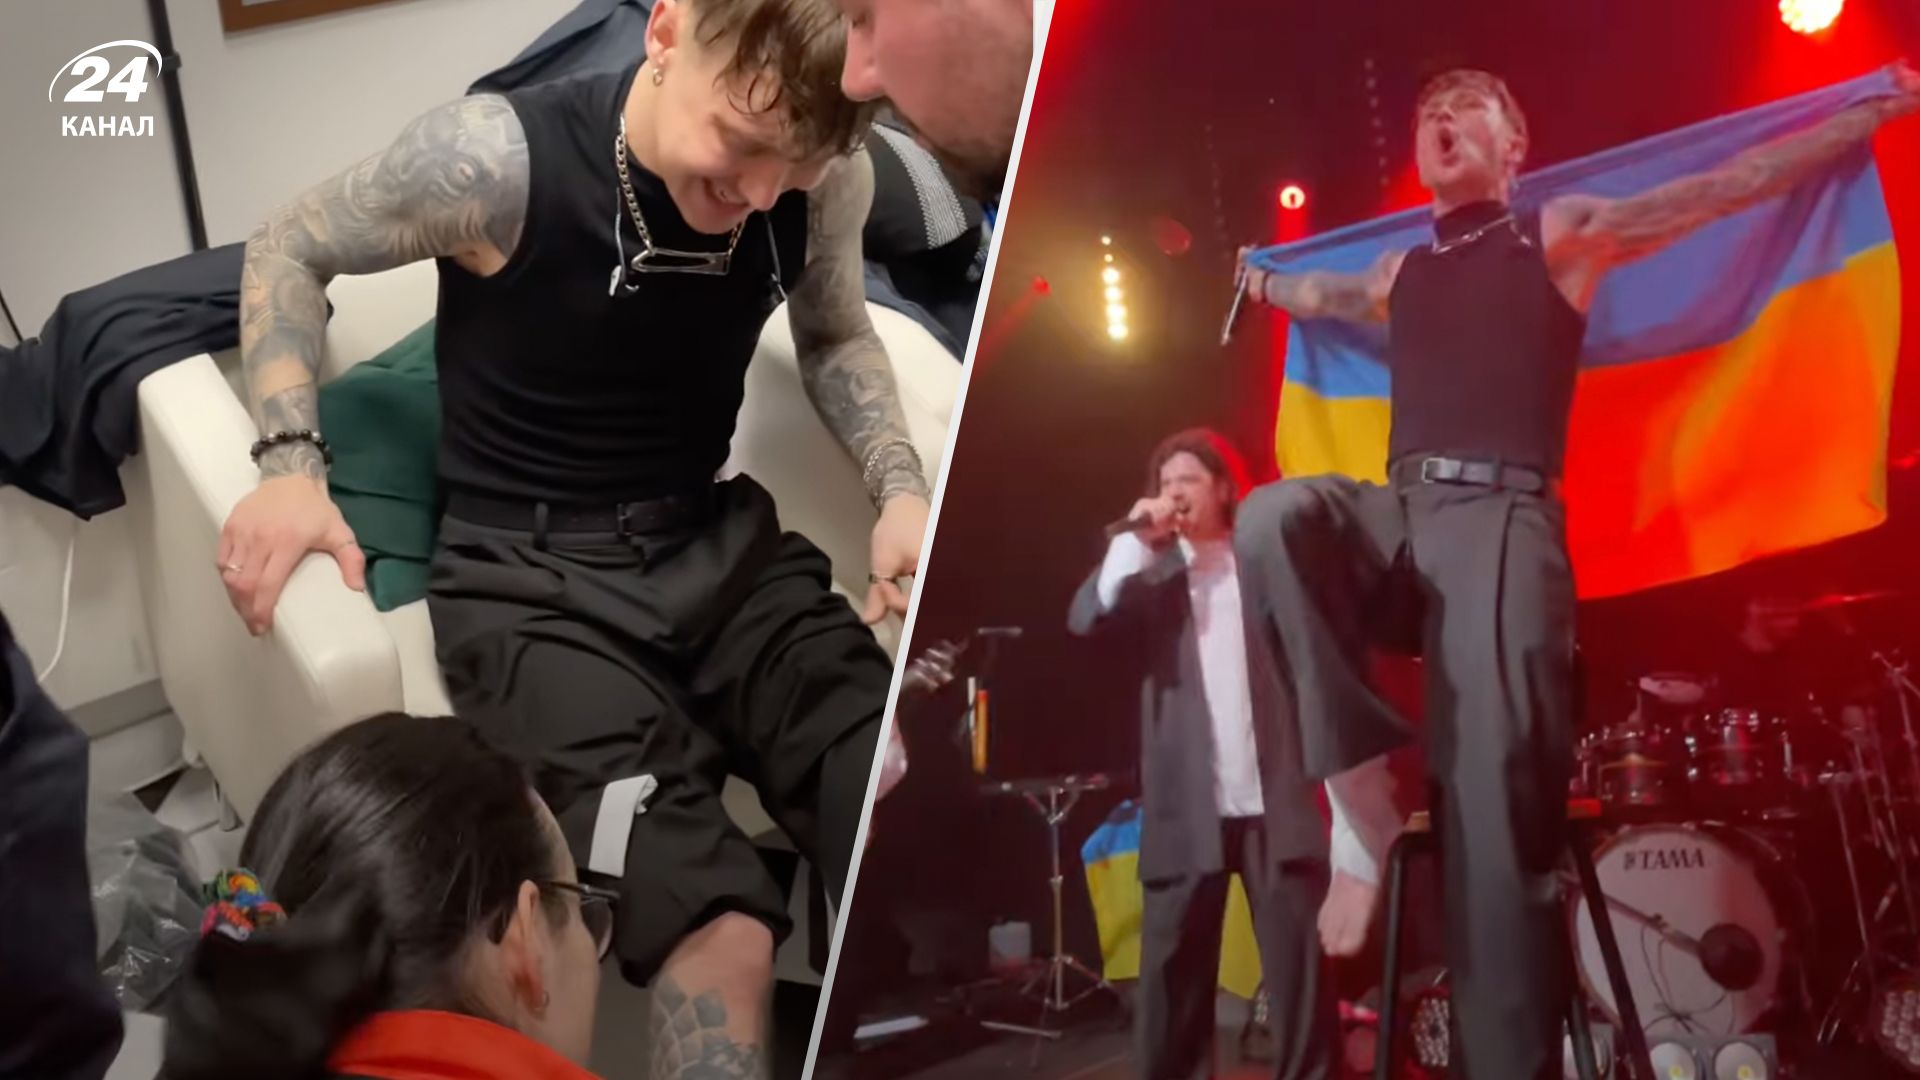 Артем Пивоваров получил травму ноги во время концерта в Польше